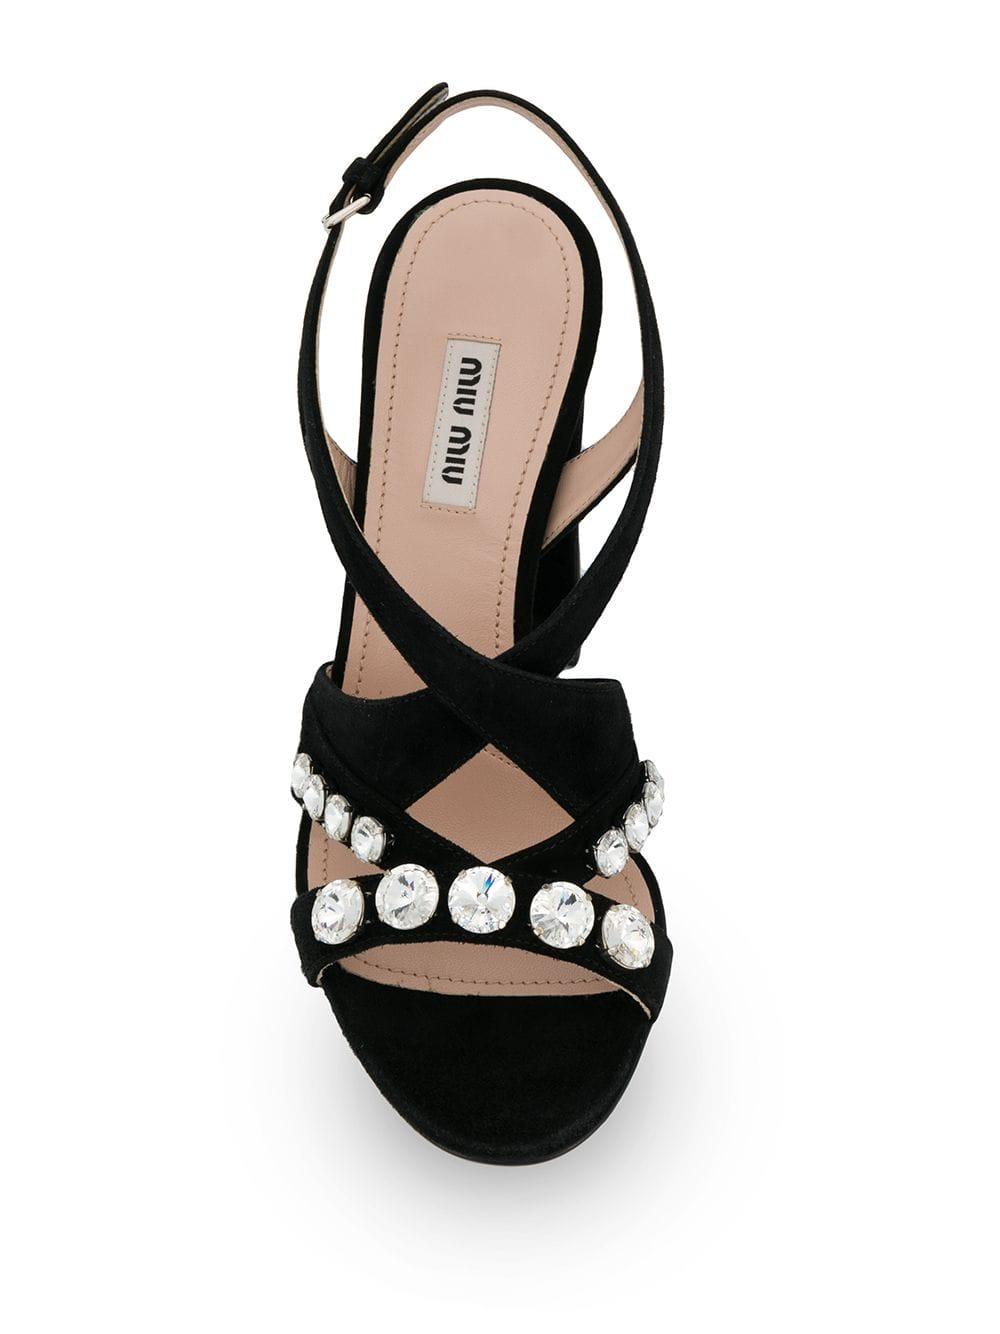 Miu Miu Suede Crystal Embellished Sandals in Black - Save 49% - Lyst